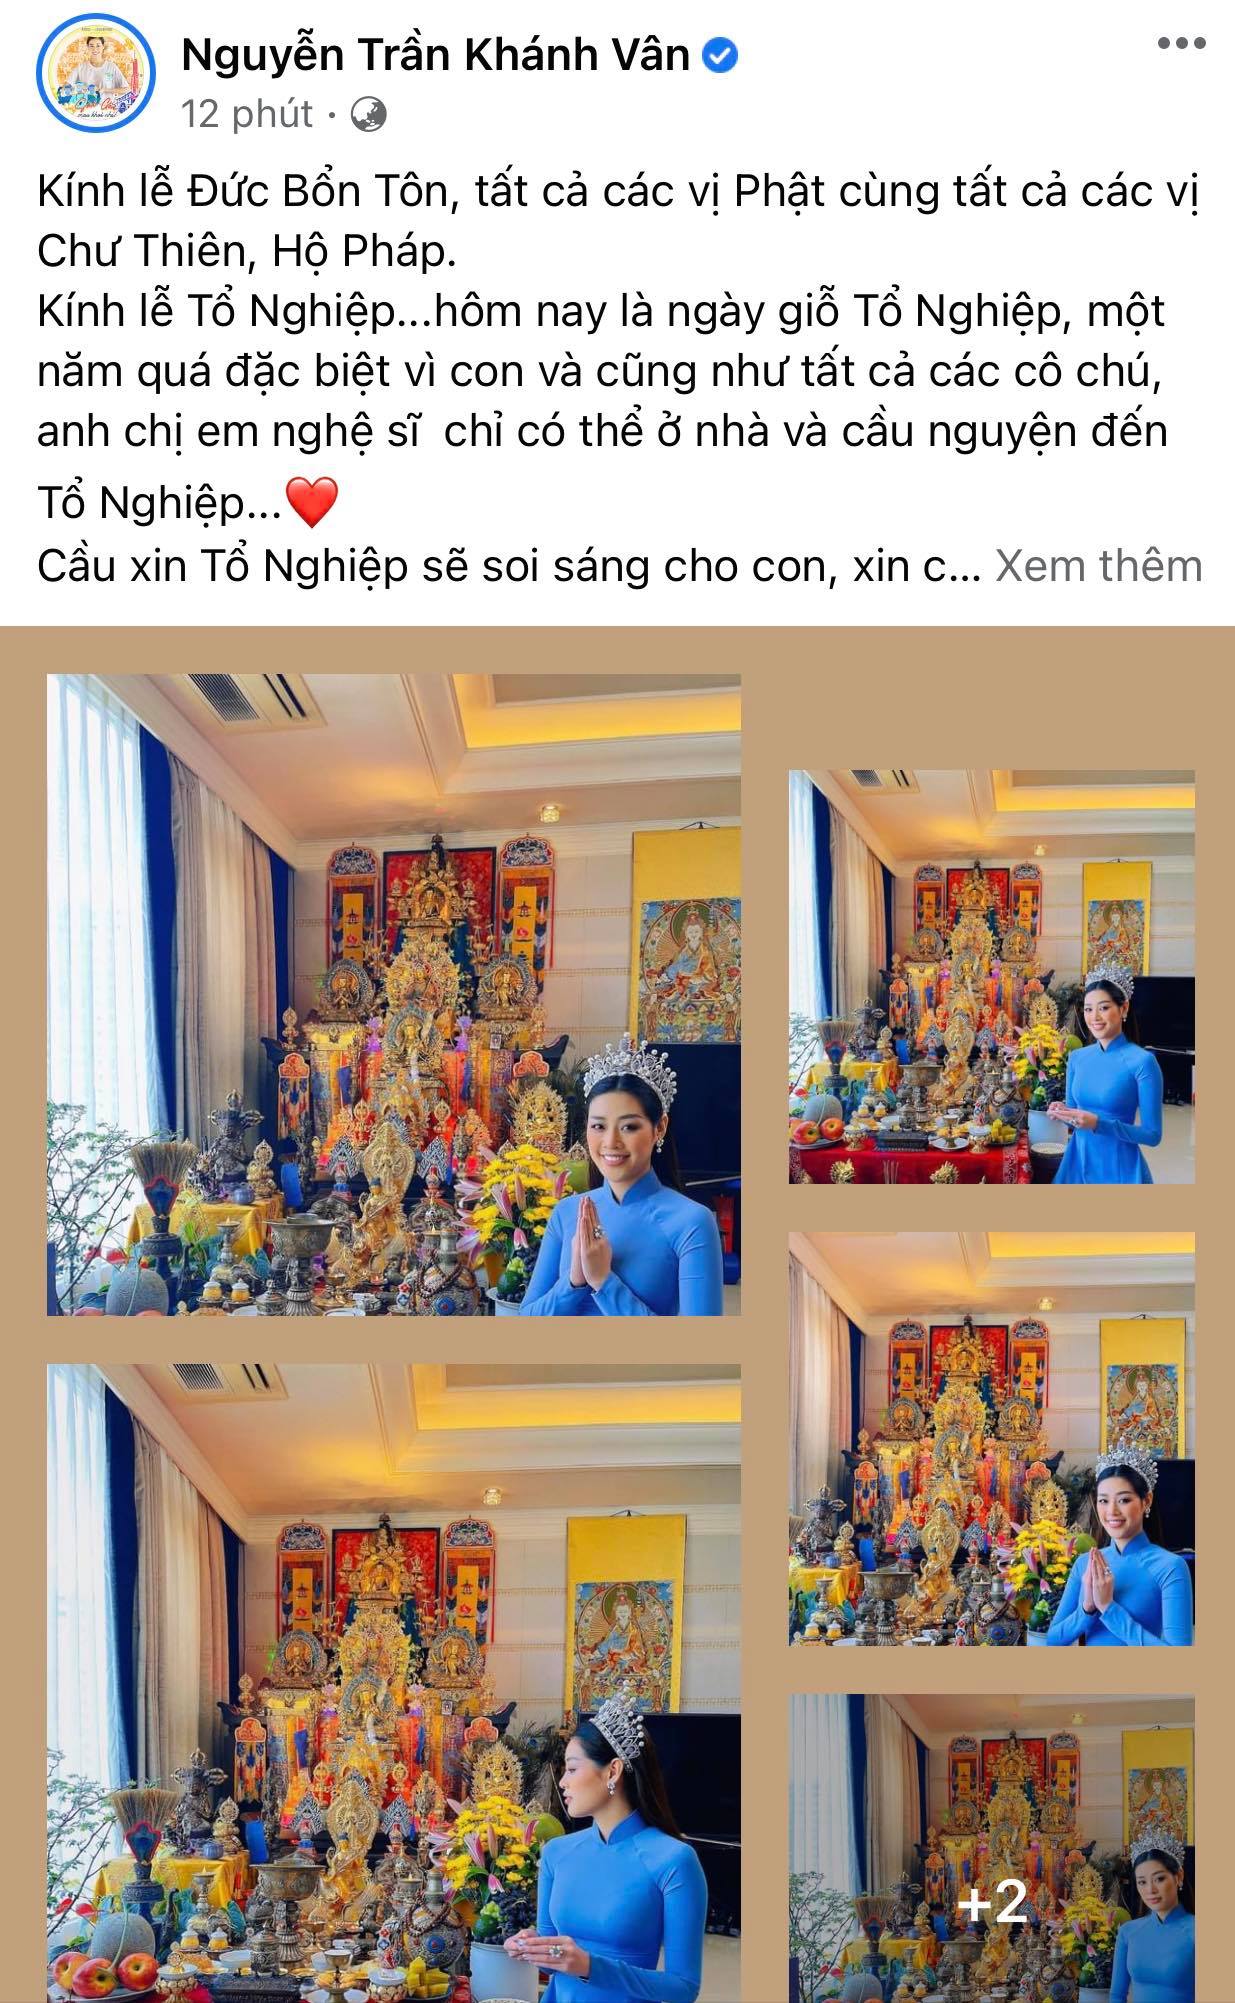 Hoa hậu Hoàn vũ Việt Nam 2019 - Nguyễn Trần Khánh Vân bày biện kì công để cúng tổ nghiệp. 